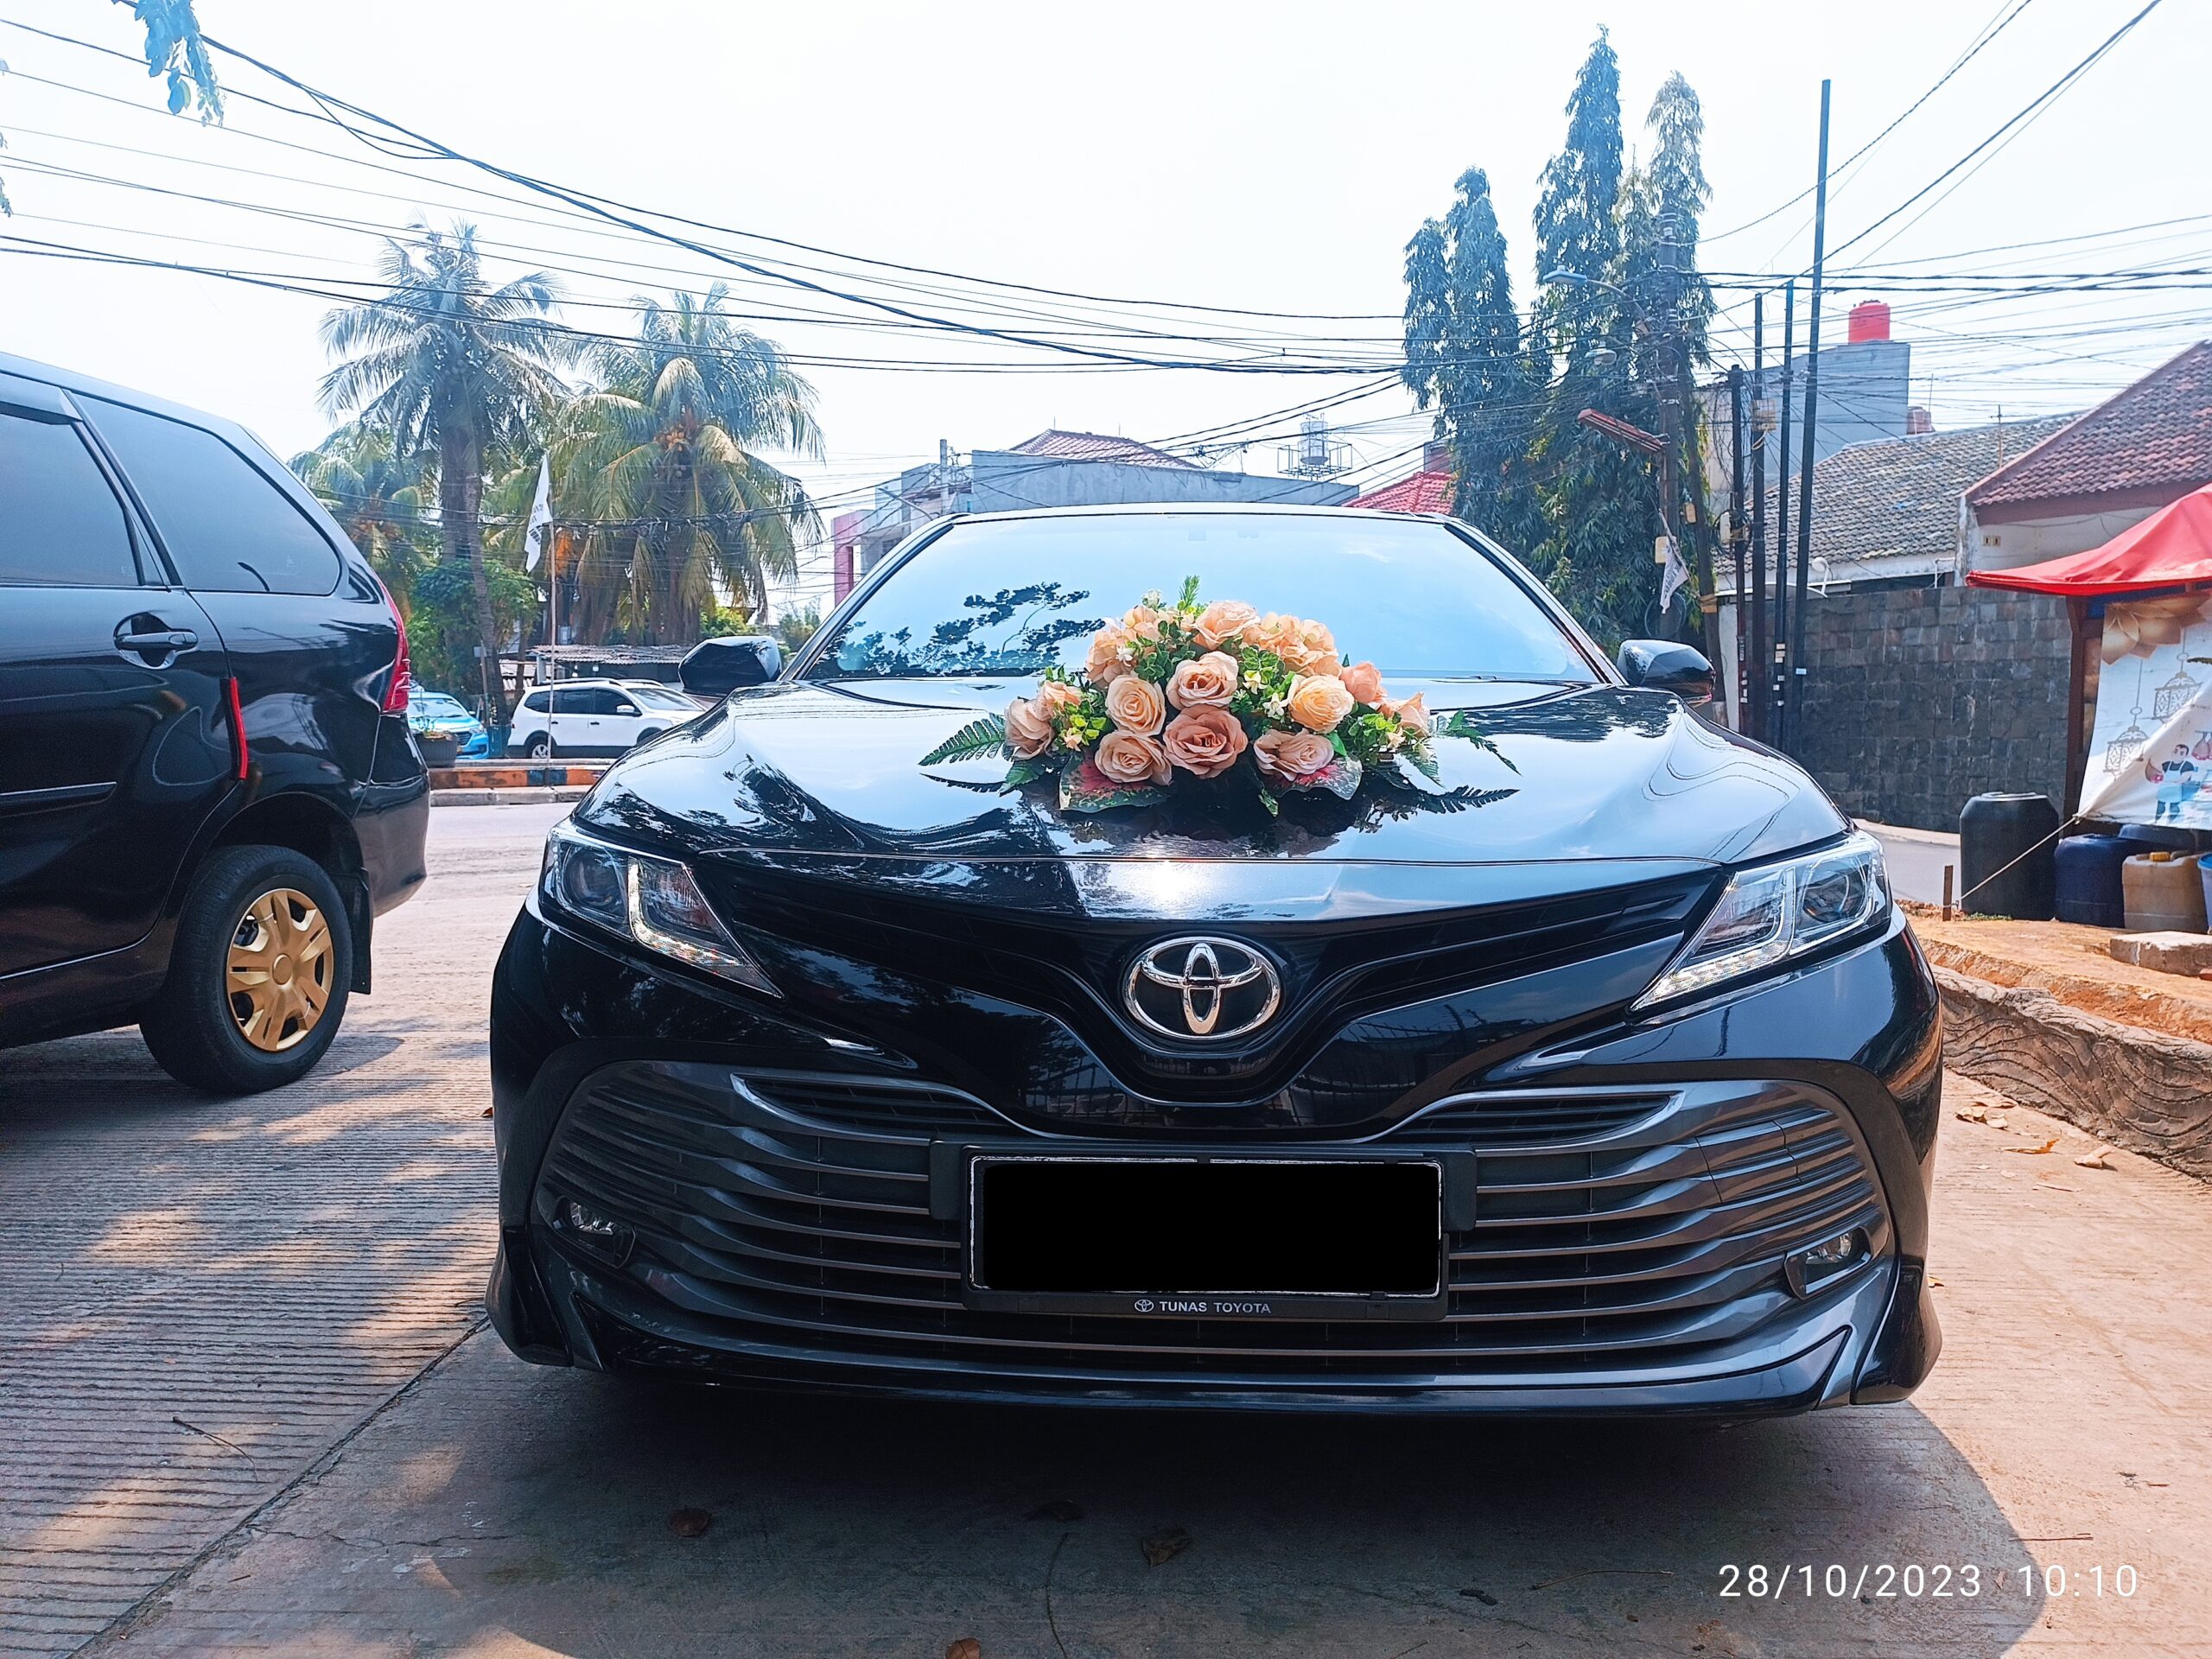 Sewa Mobil Pengantin Murah di Jakarta